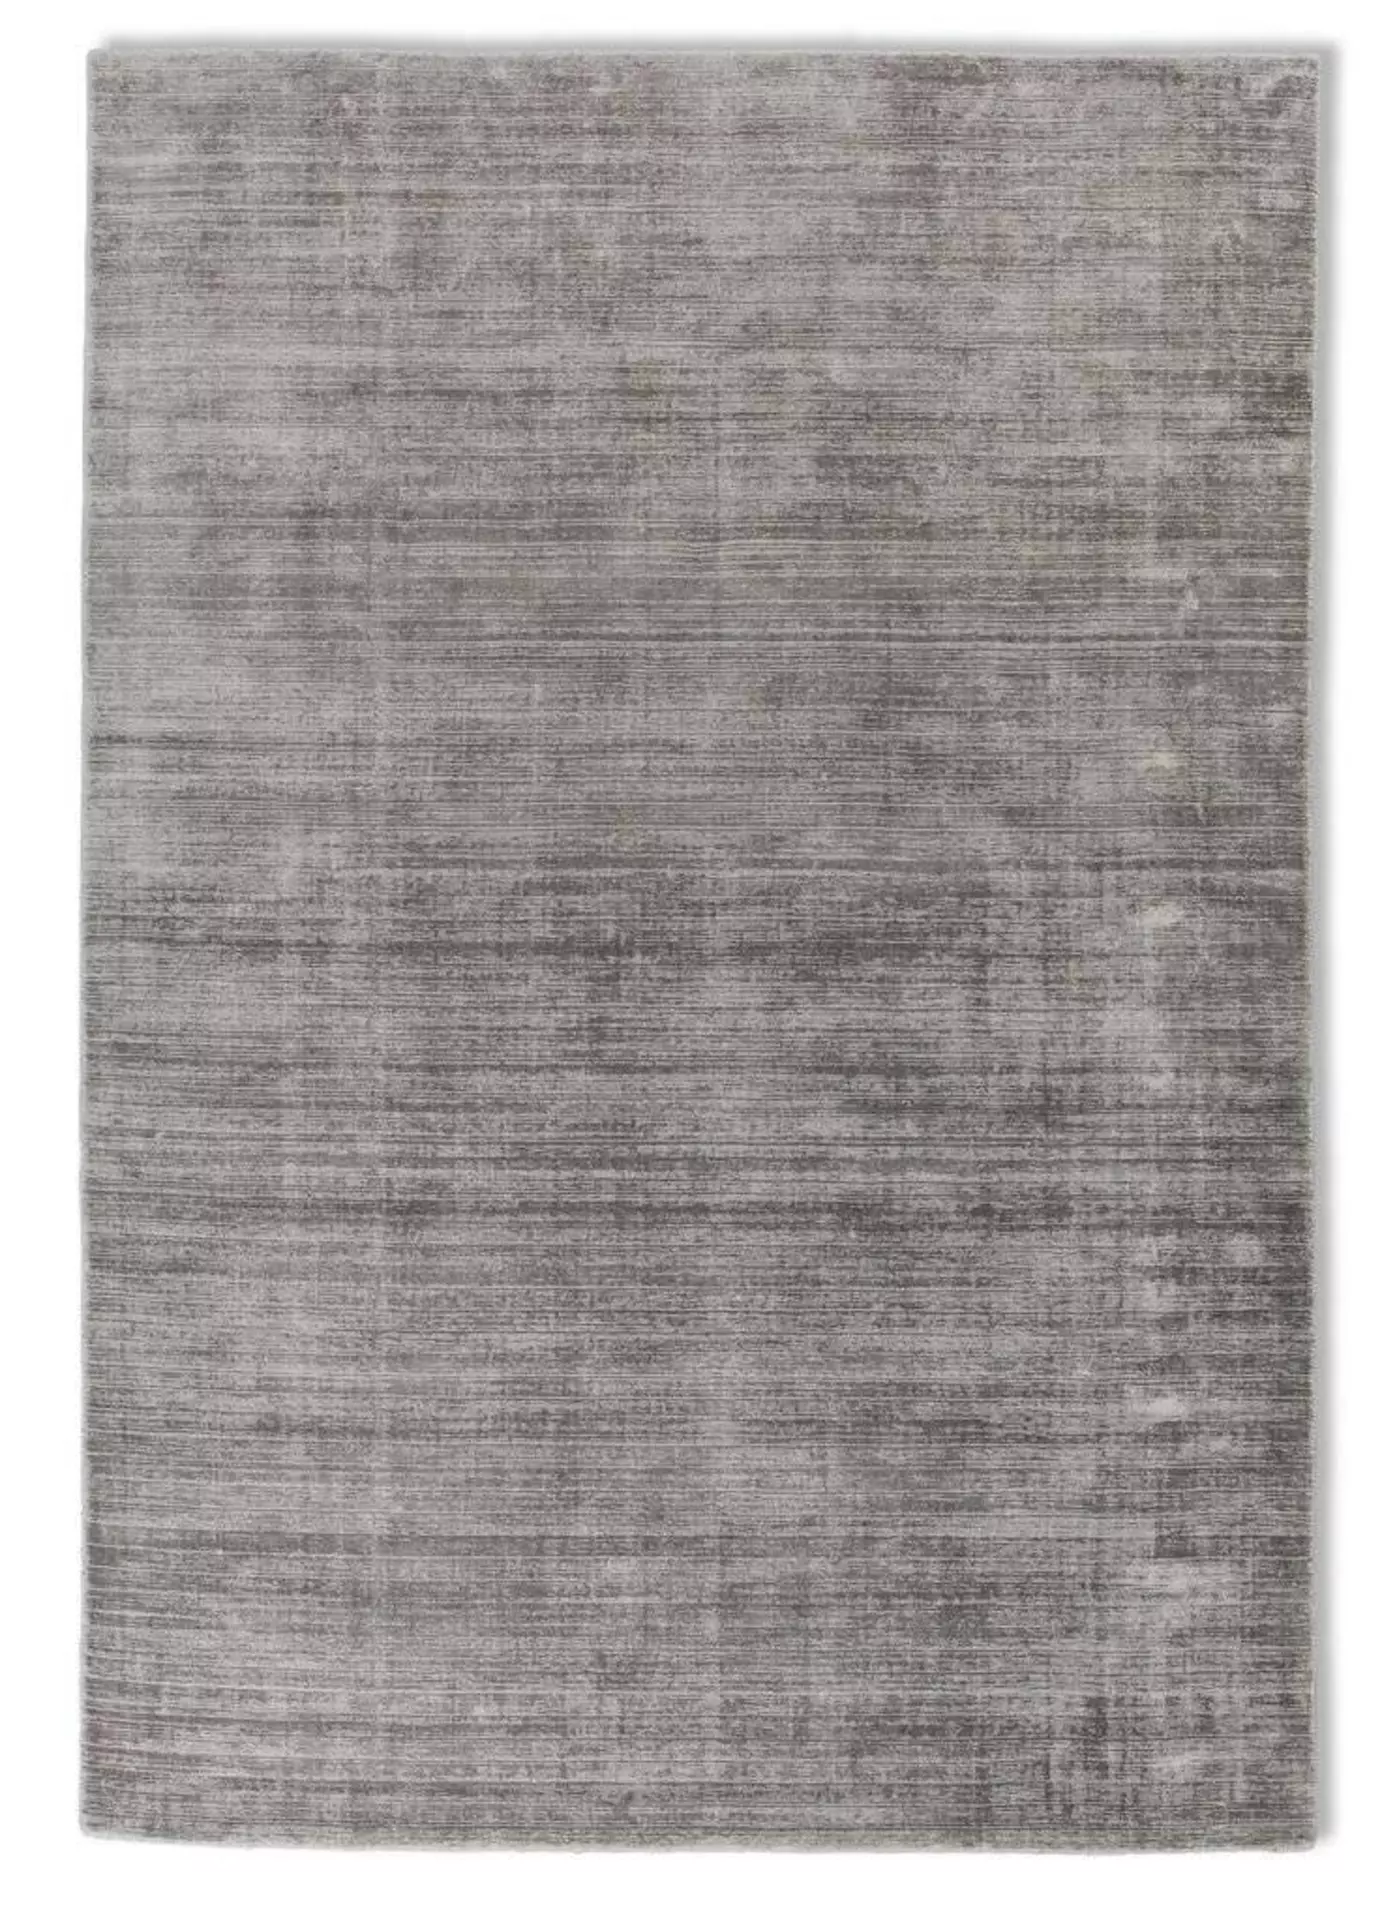 Handwebteppich Alessa SCHÖNER WOHNEN-Kollektion Textil 140 x 200 cm